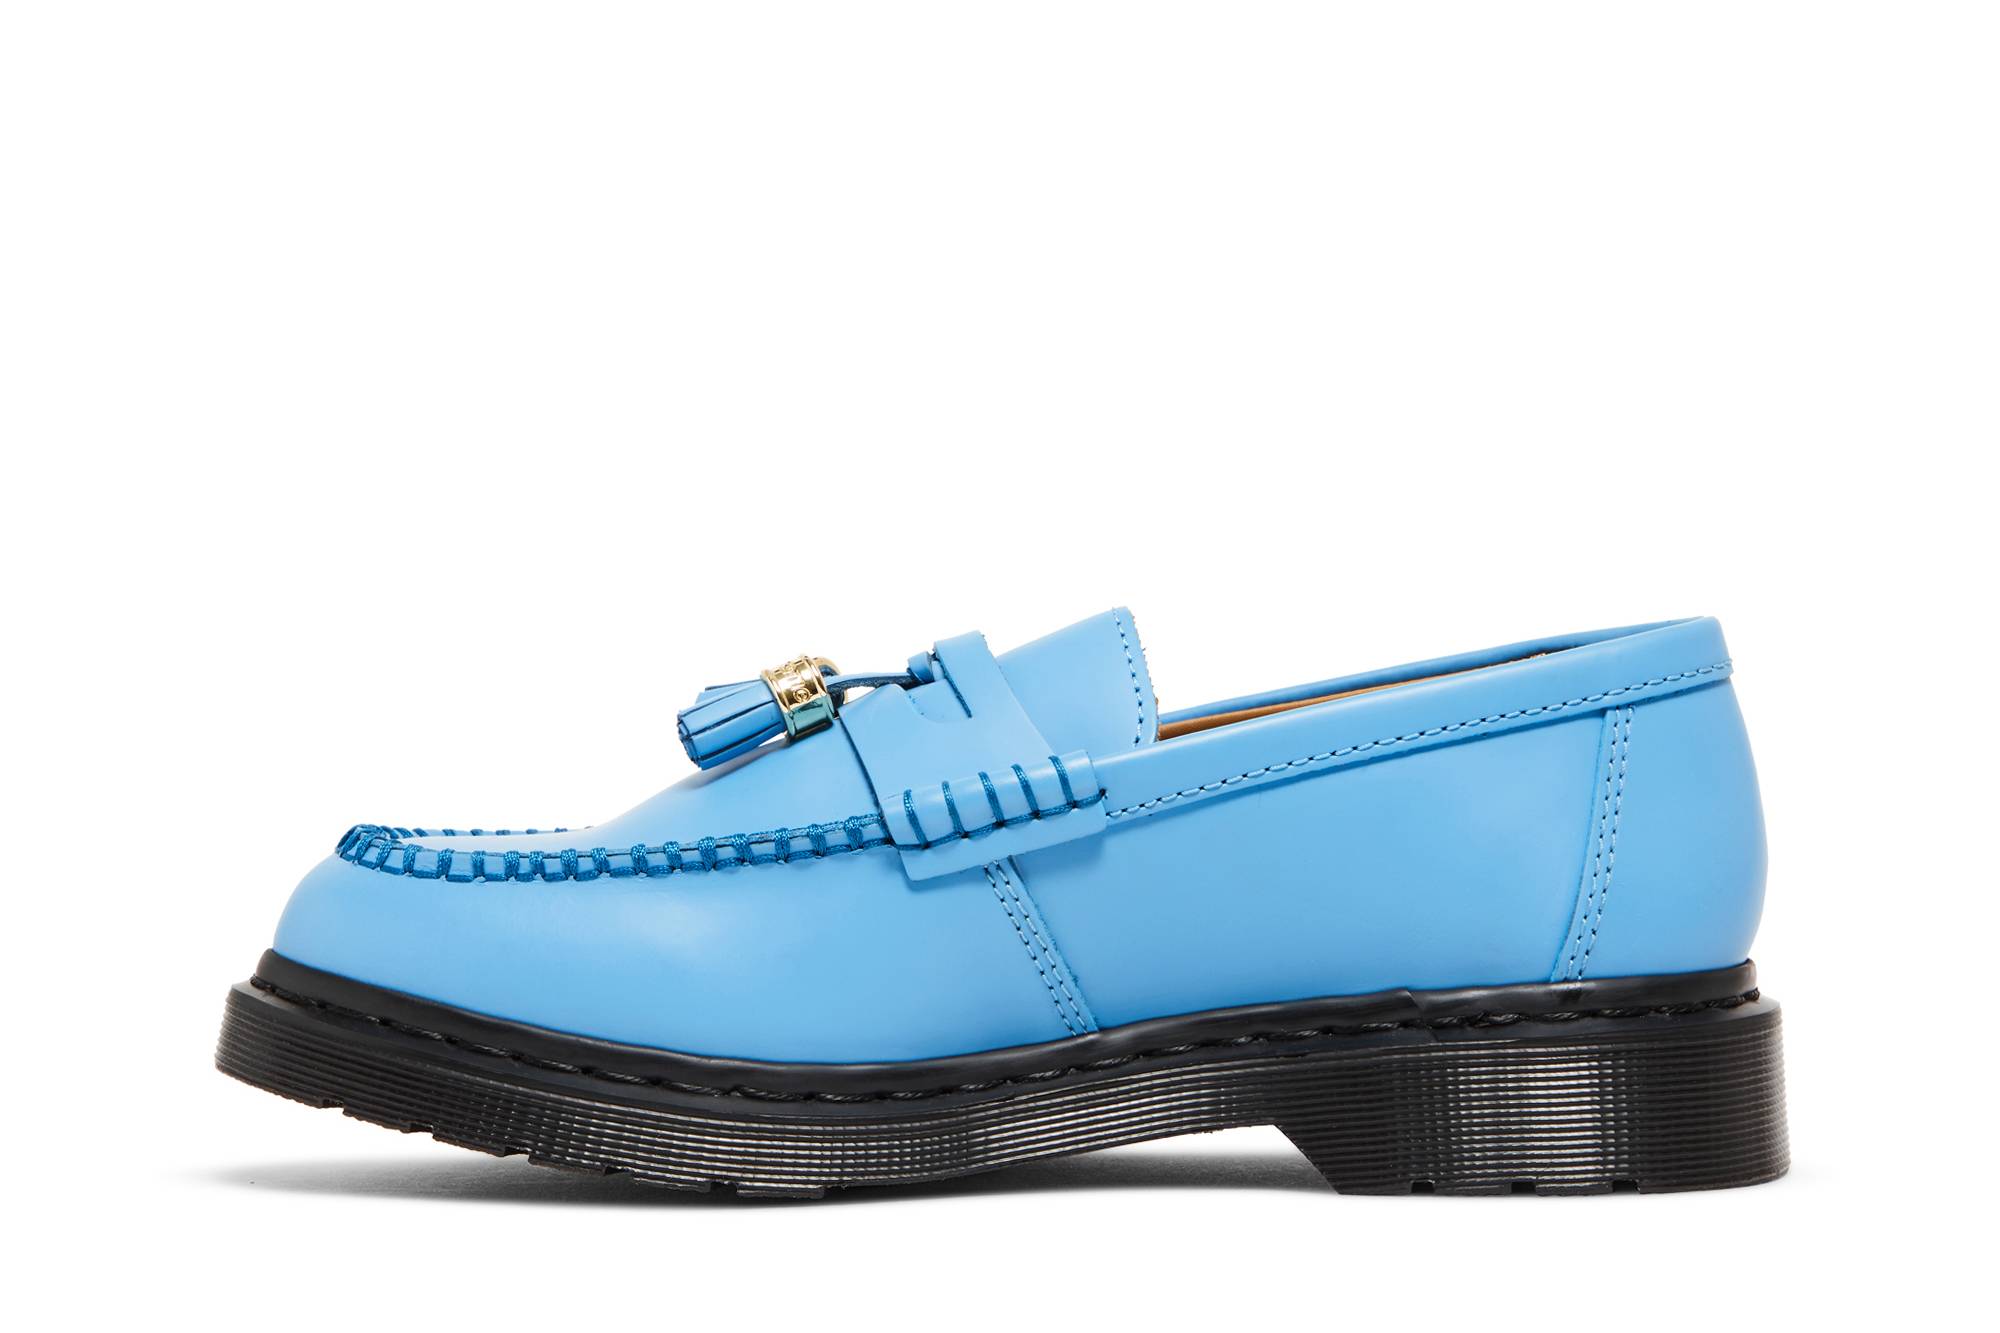 Pre-owned Dr. Martens' Supreme X Penton Tassel Loafer 'mid Blue'